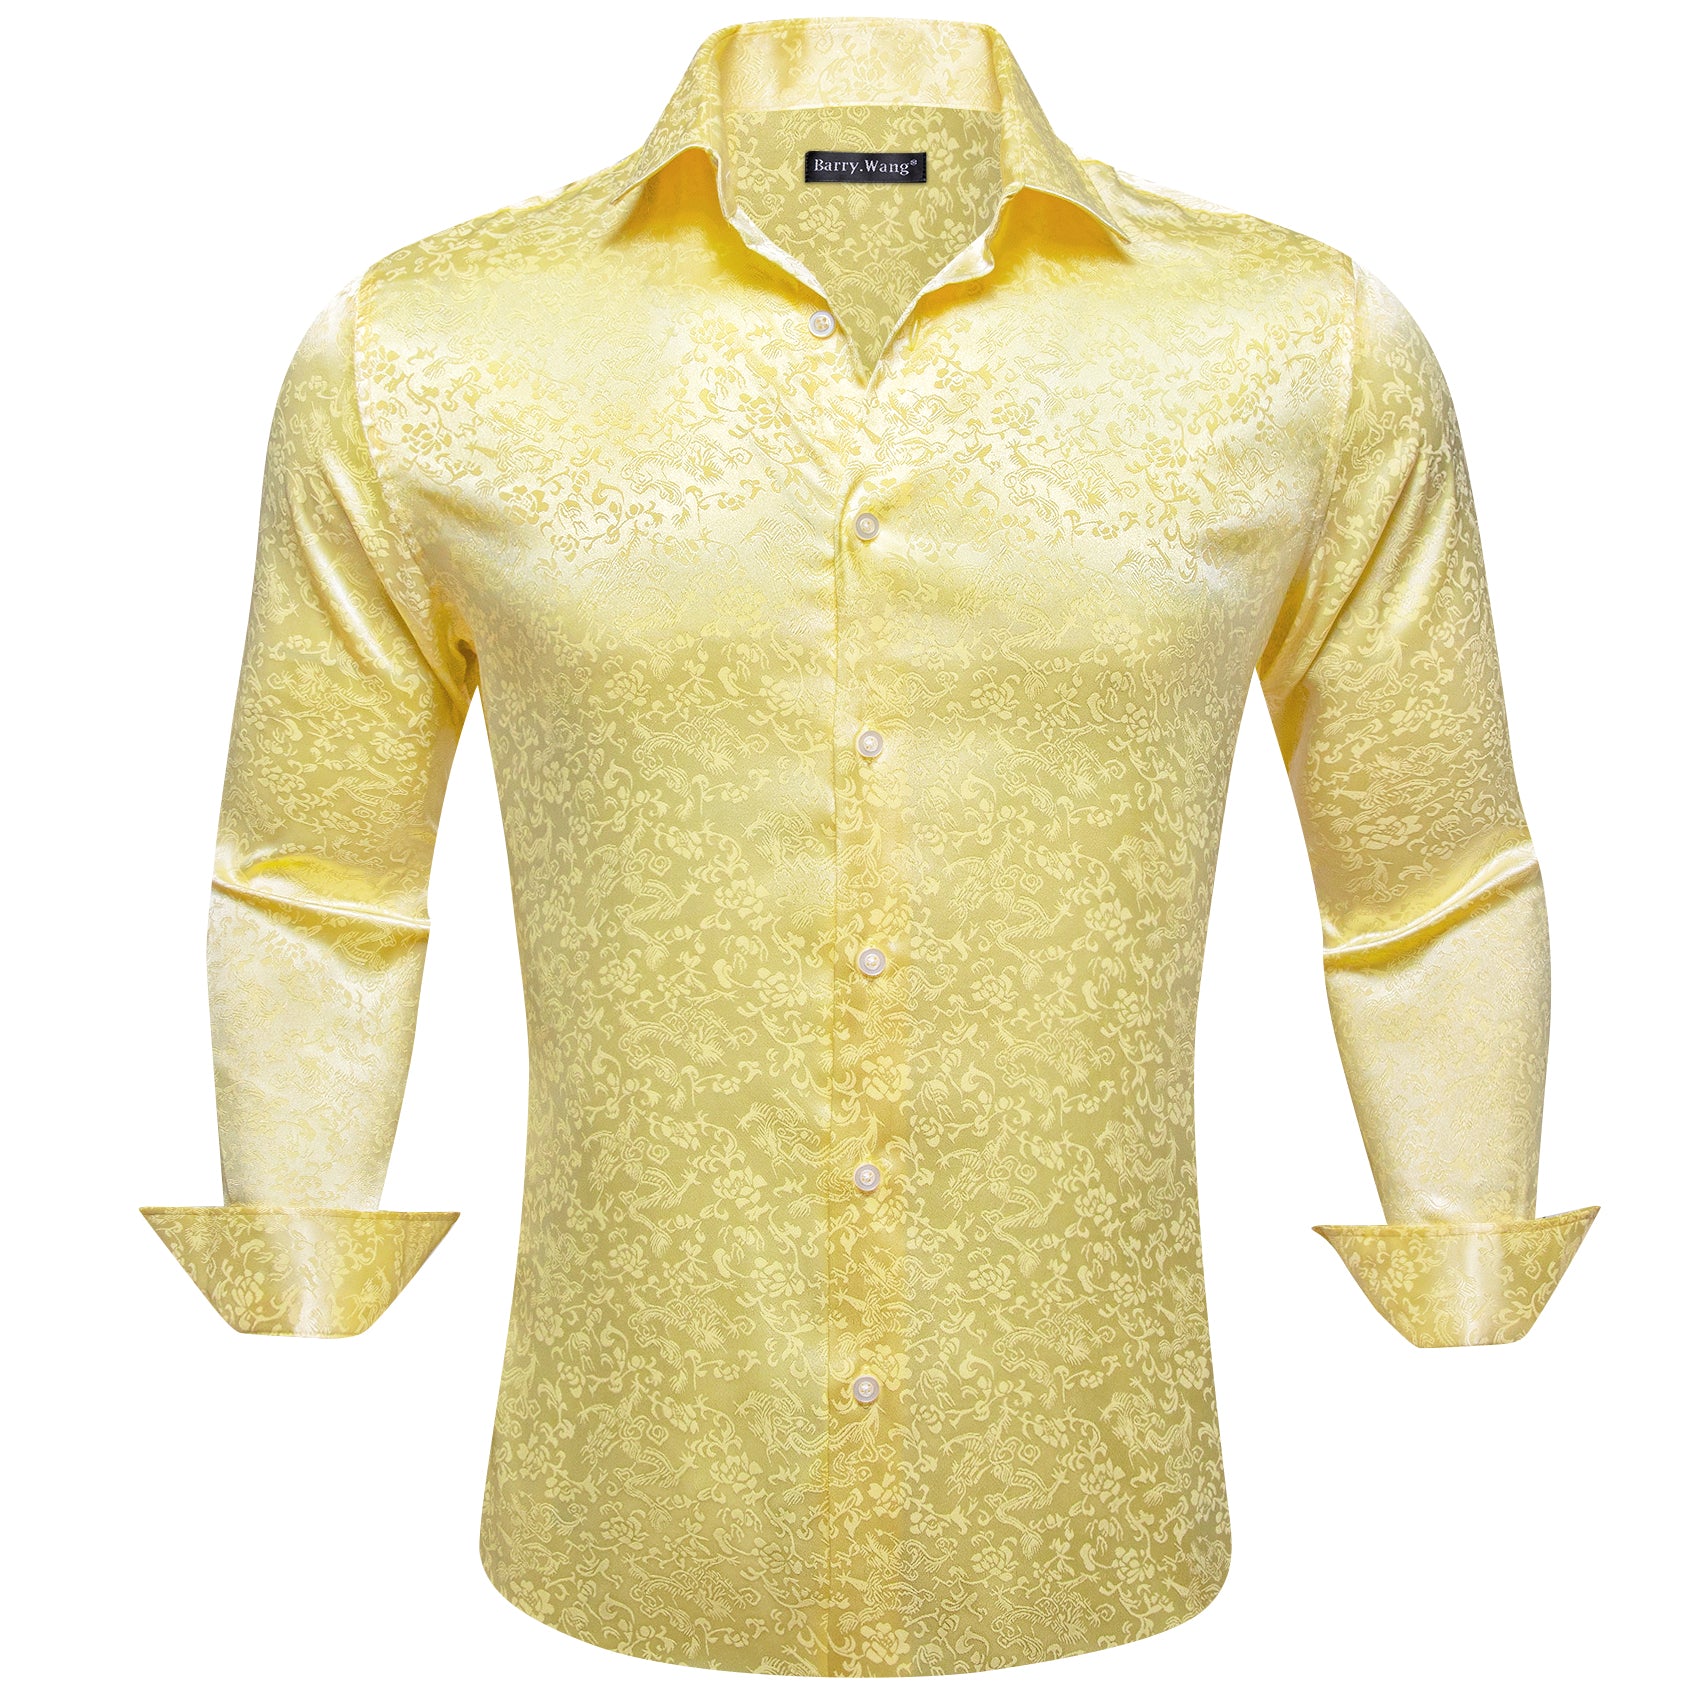 Barry.wang Mist Yellow Floral Silk Men's Shirt